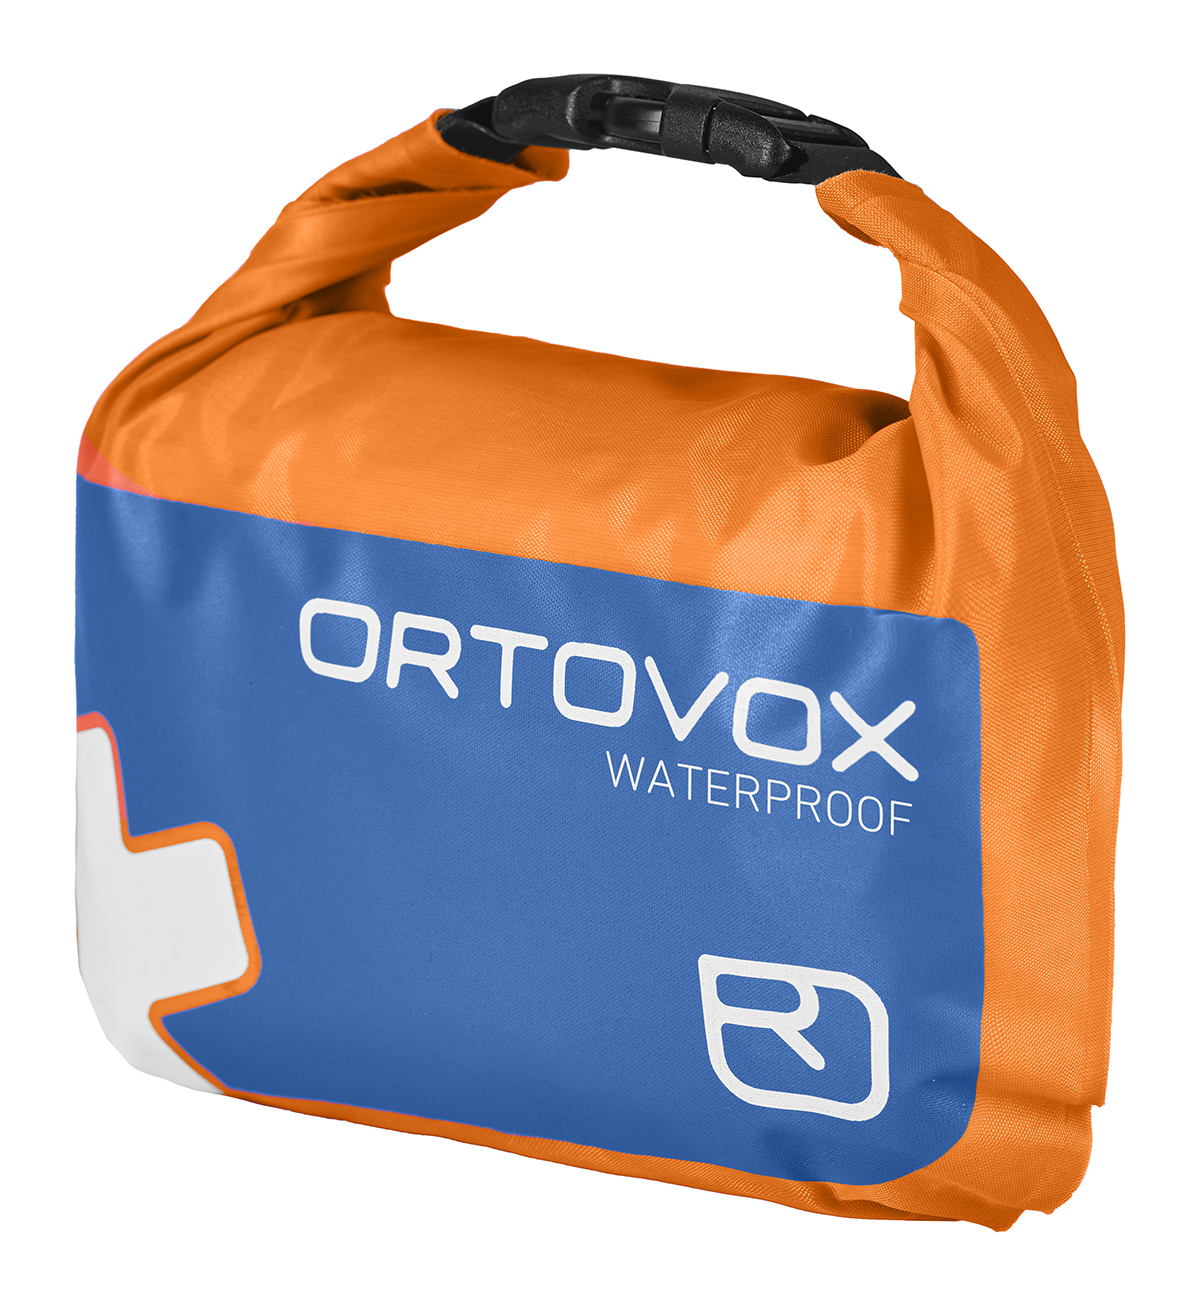 Ortovox lékárnička First Aid Waterproof